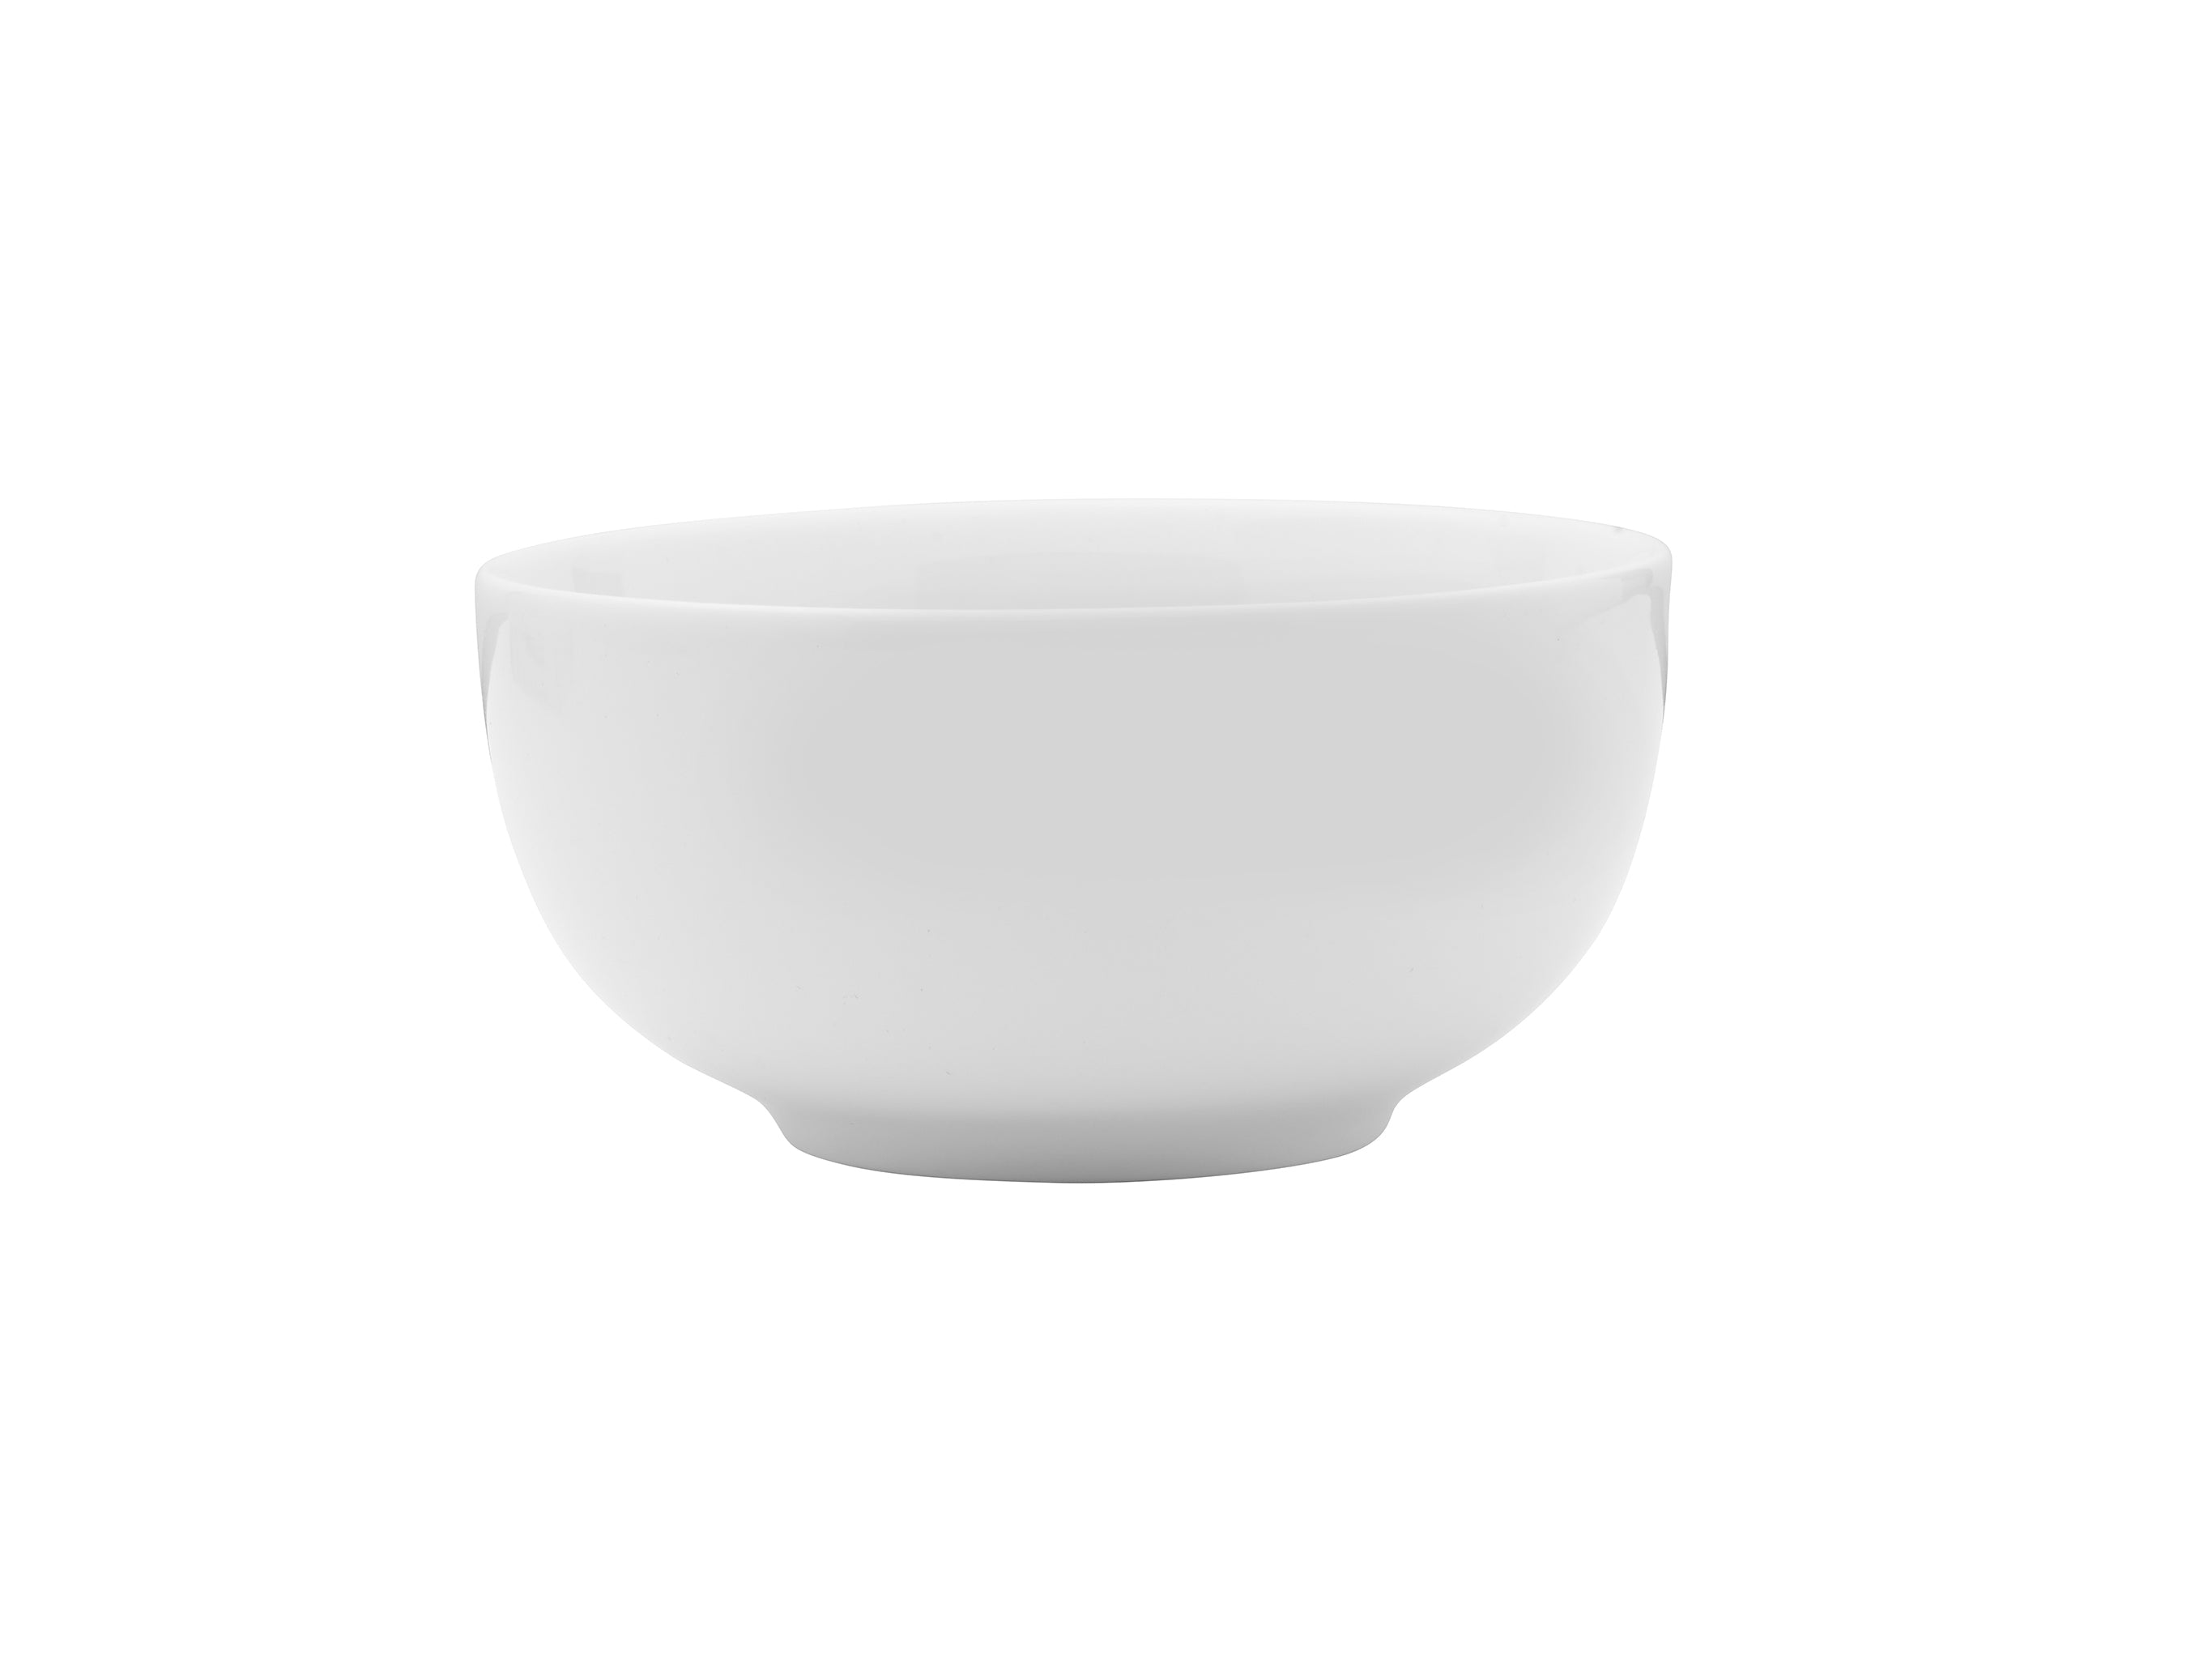 Galleria Porcelain Bowl 5.5" / 23oz White